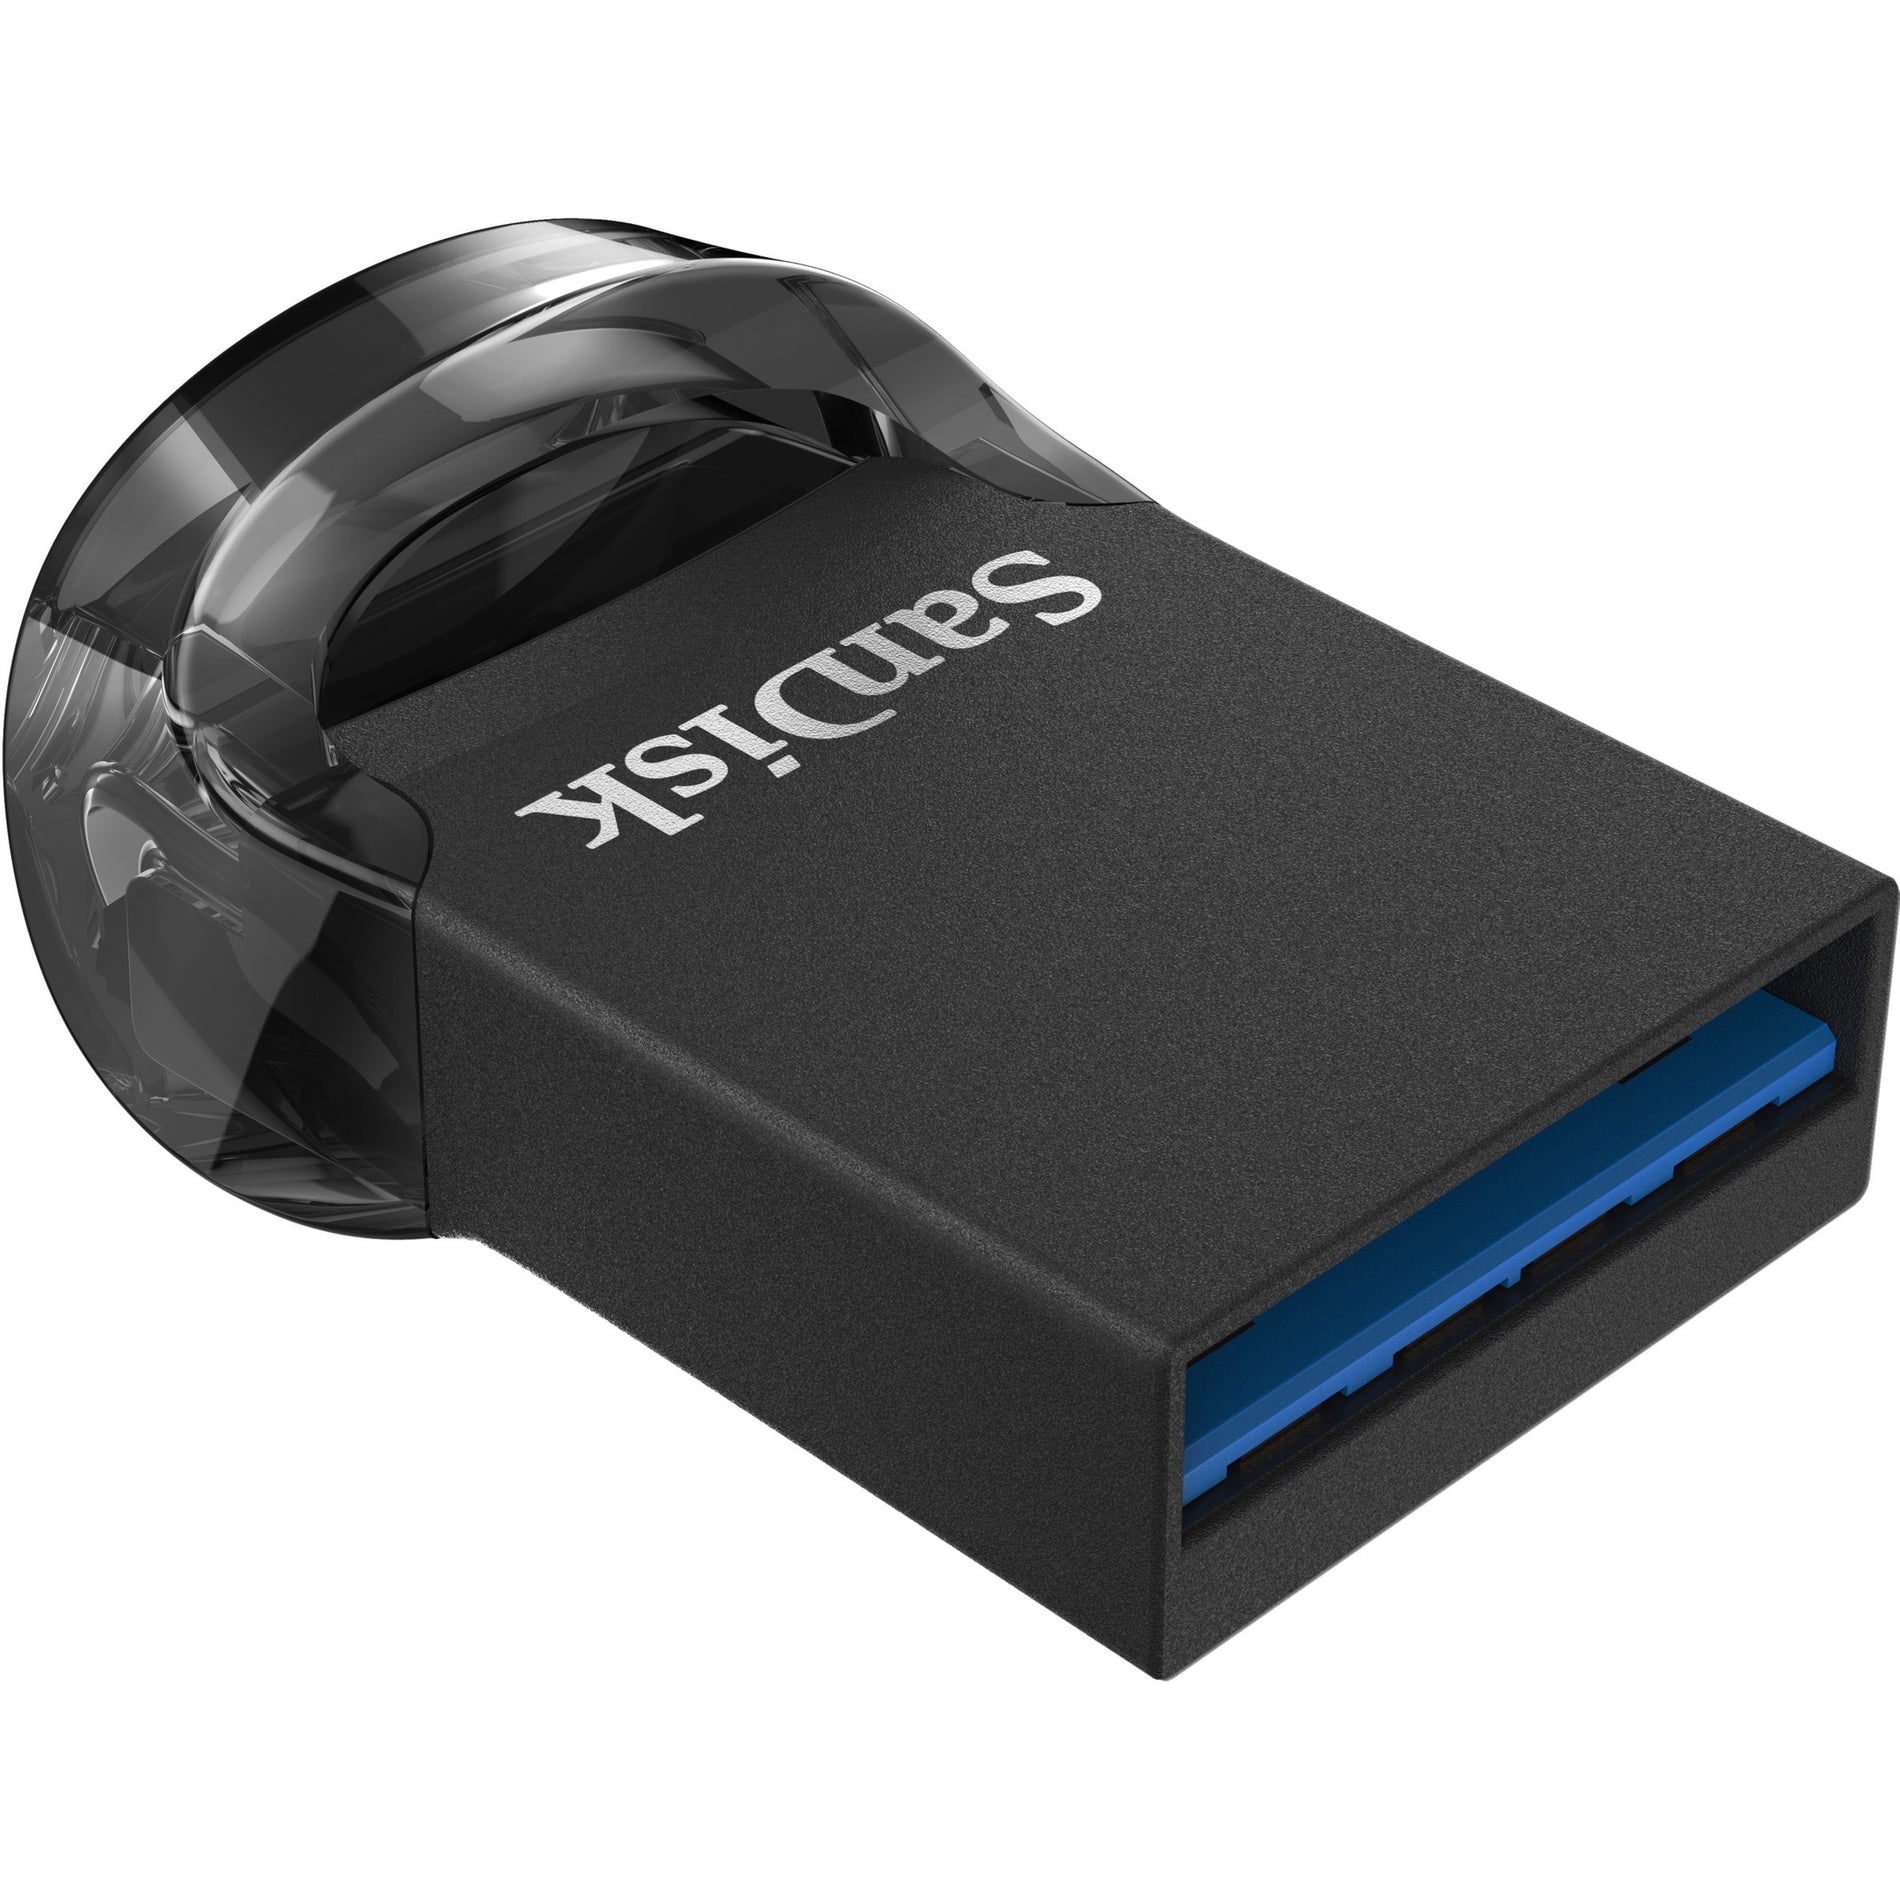 SanDisk - SanDisk SDCZ430-128G-A46 Ultra Fit USB 3.1 Flash Drive 128GB Transferencia de Datos de Alta Velocidad y Diseño Compacto